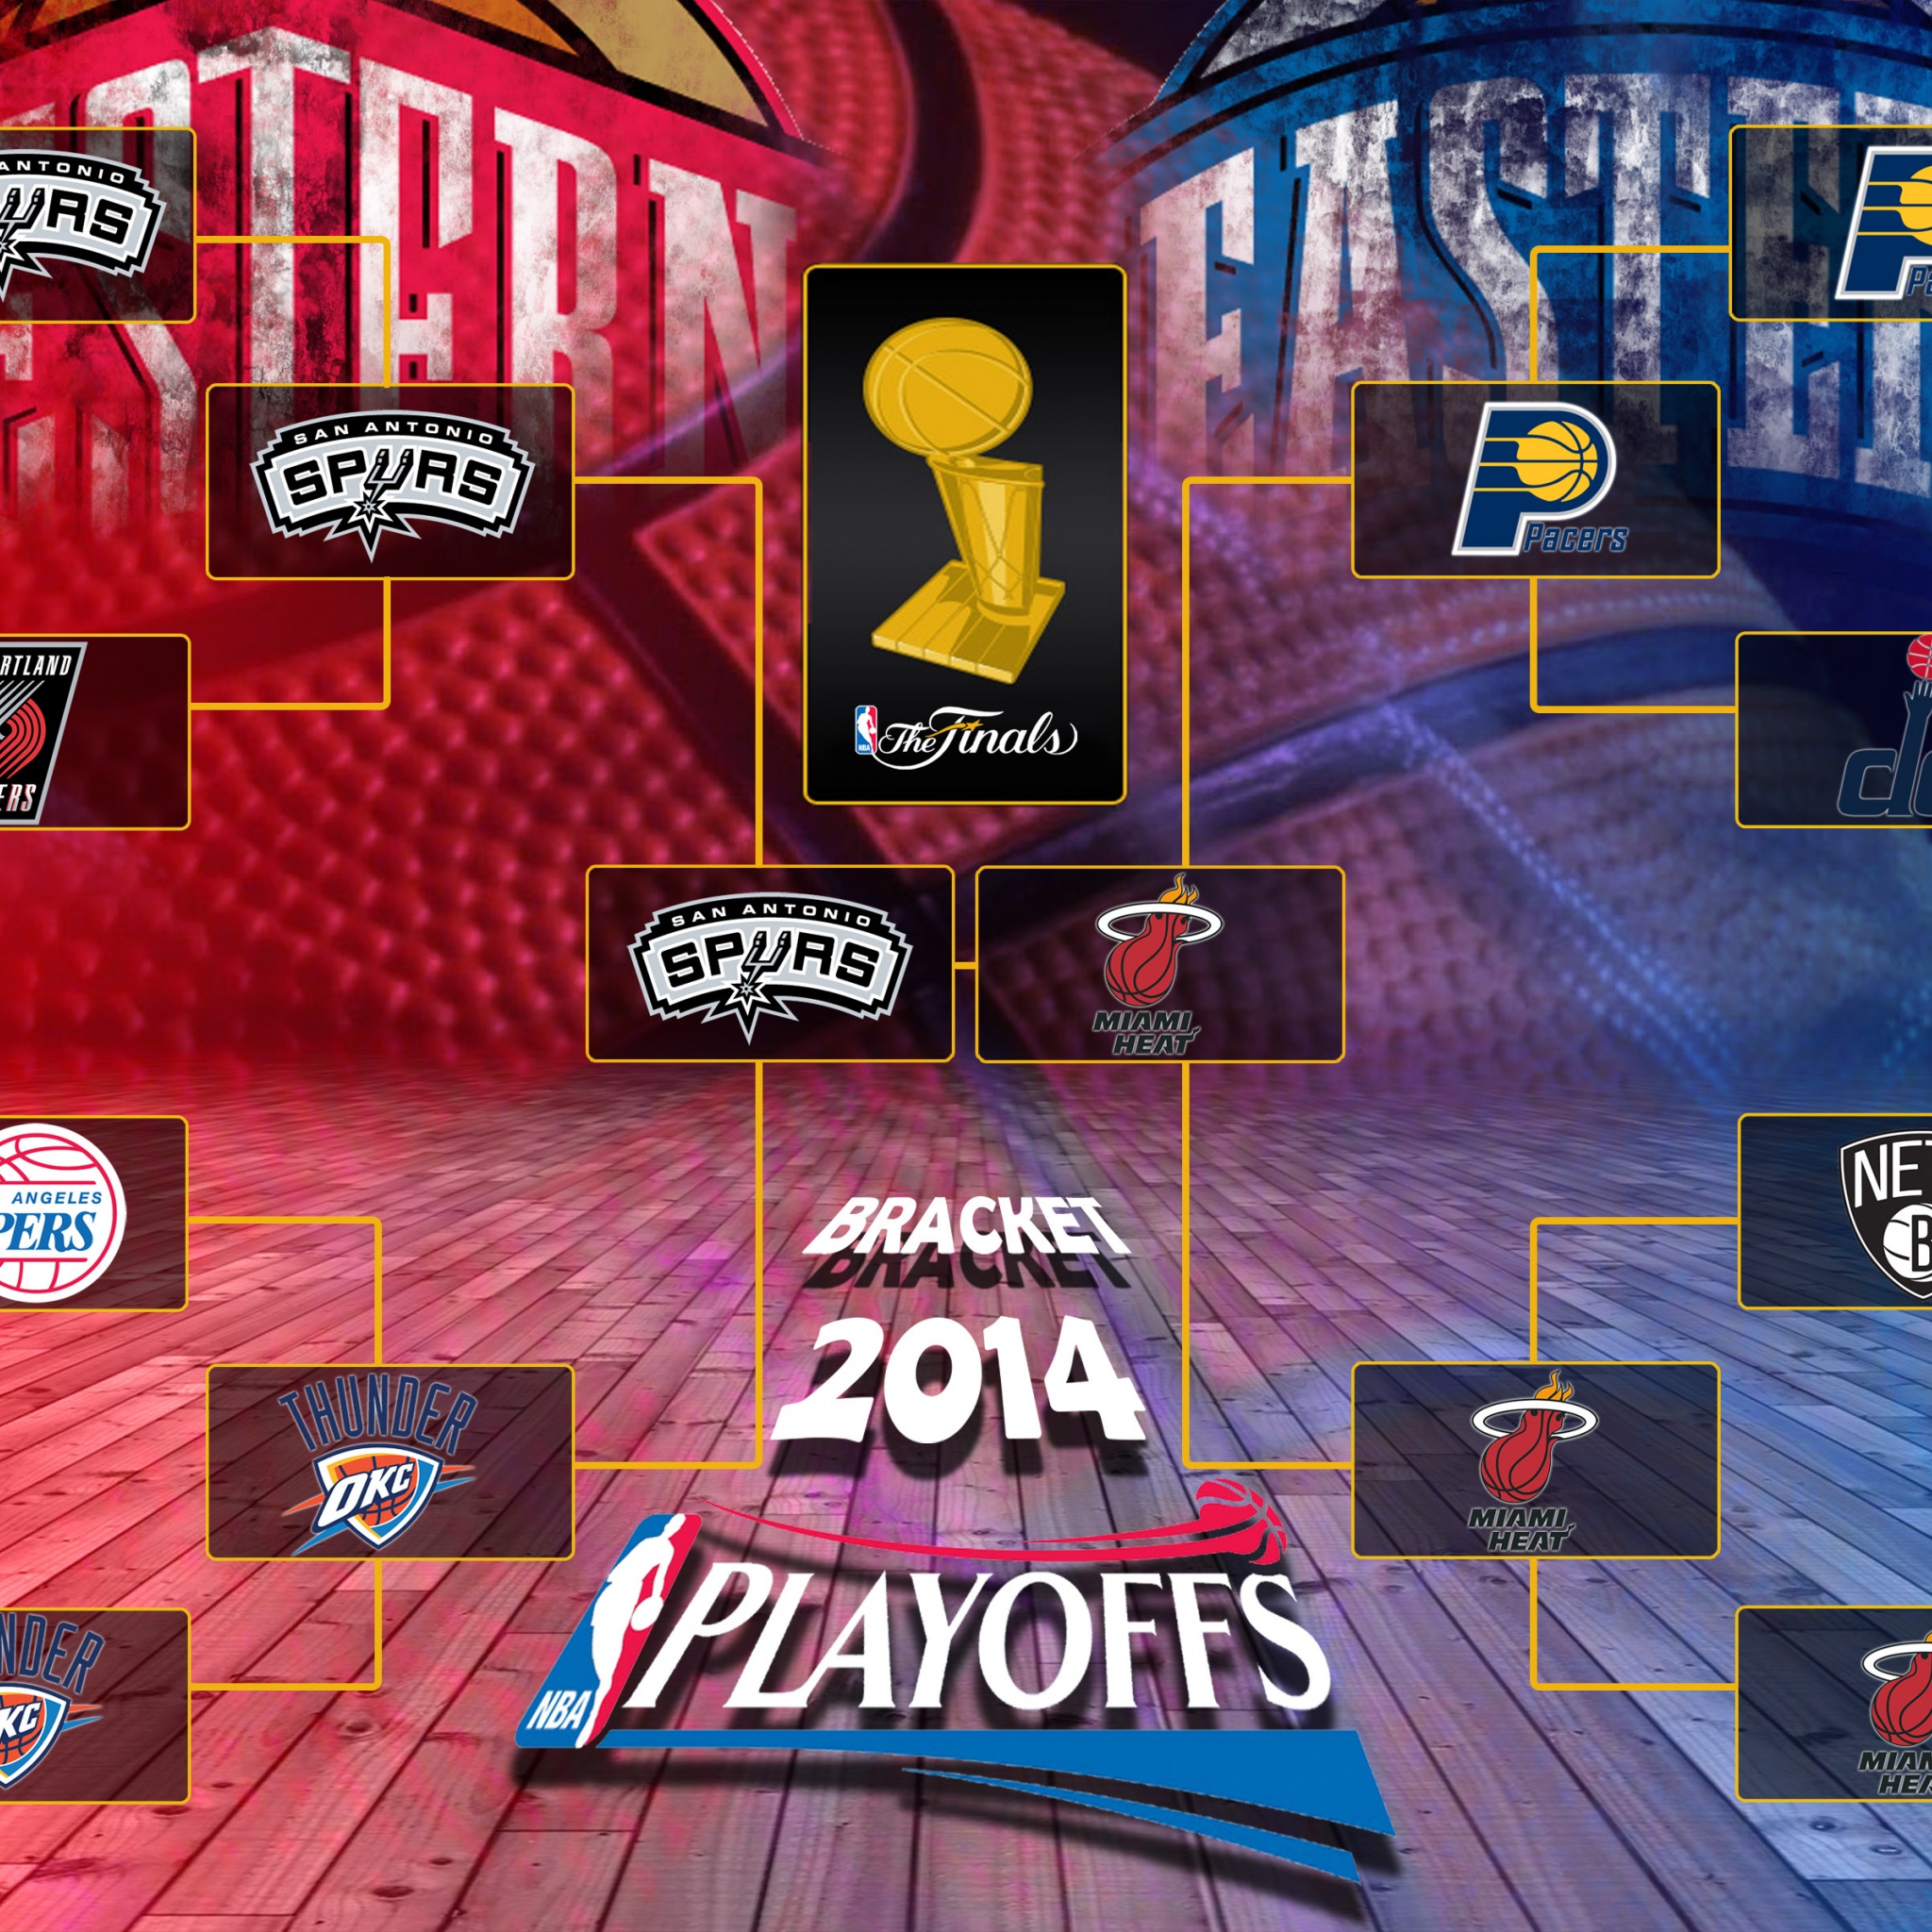 The Finals 2014 NBA Playoffs Bracket